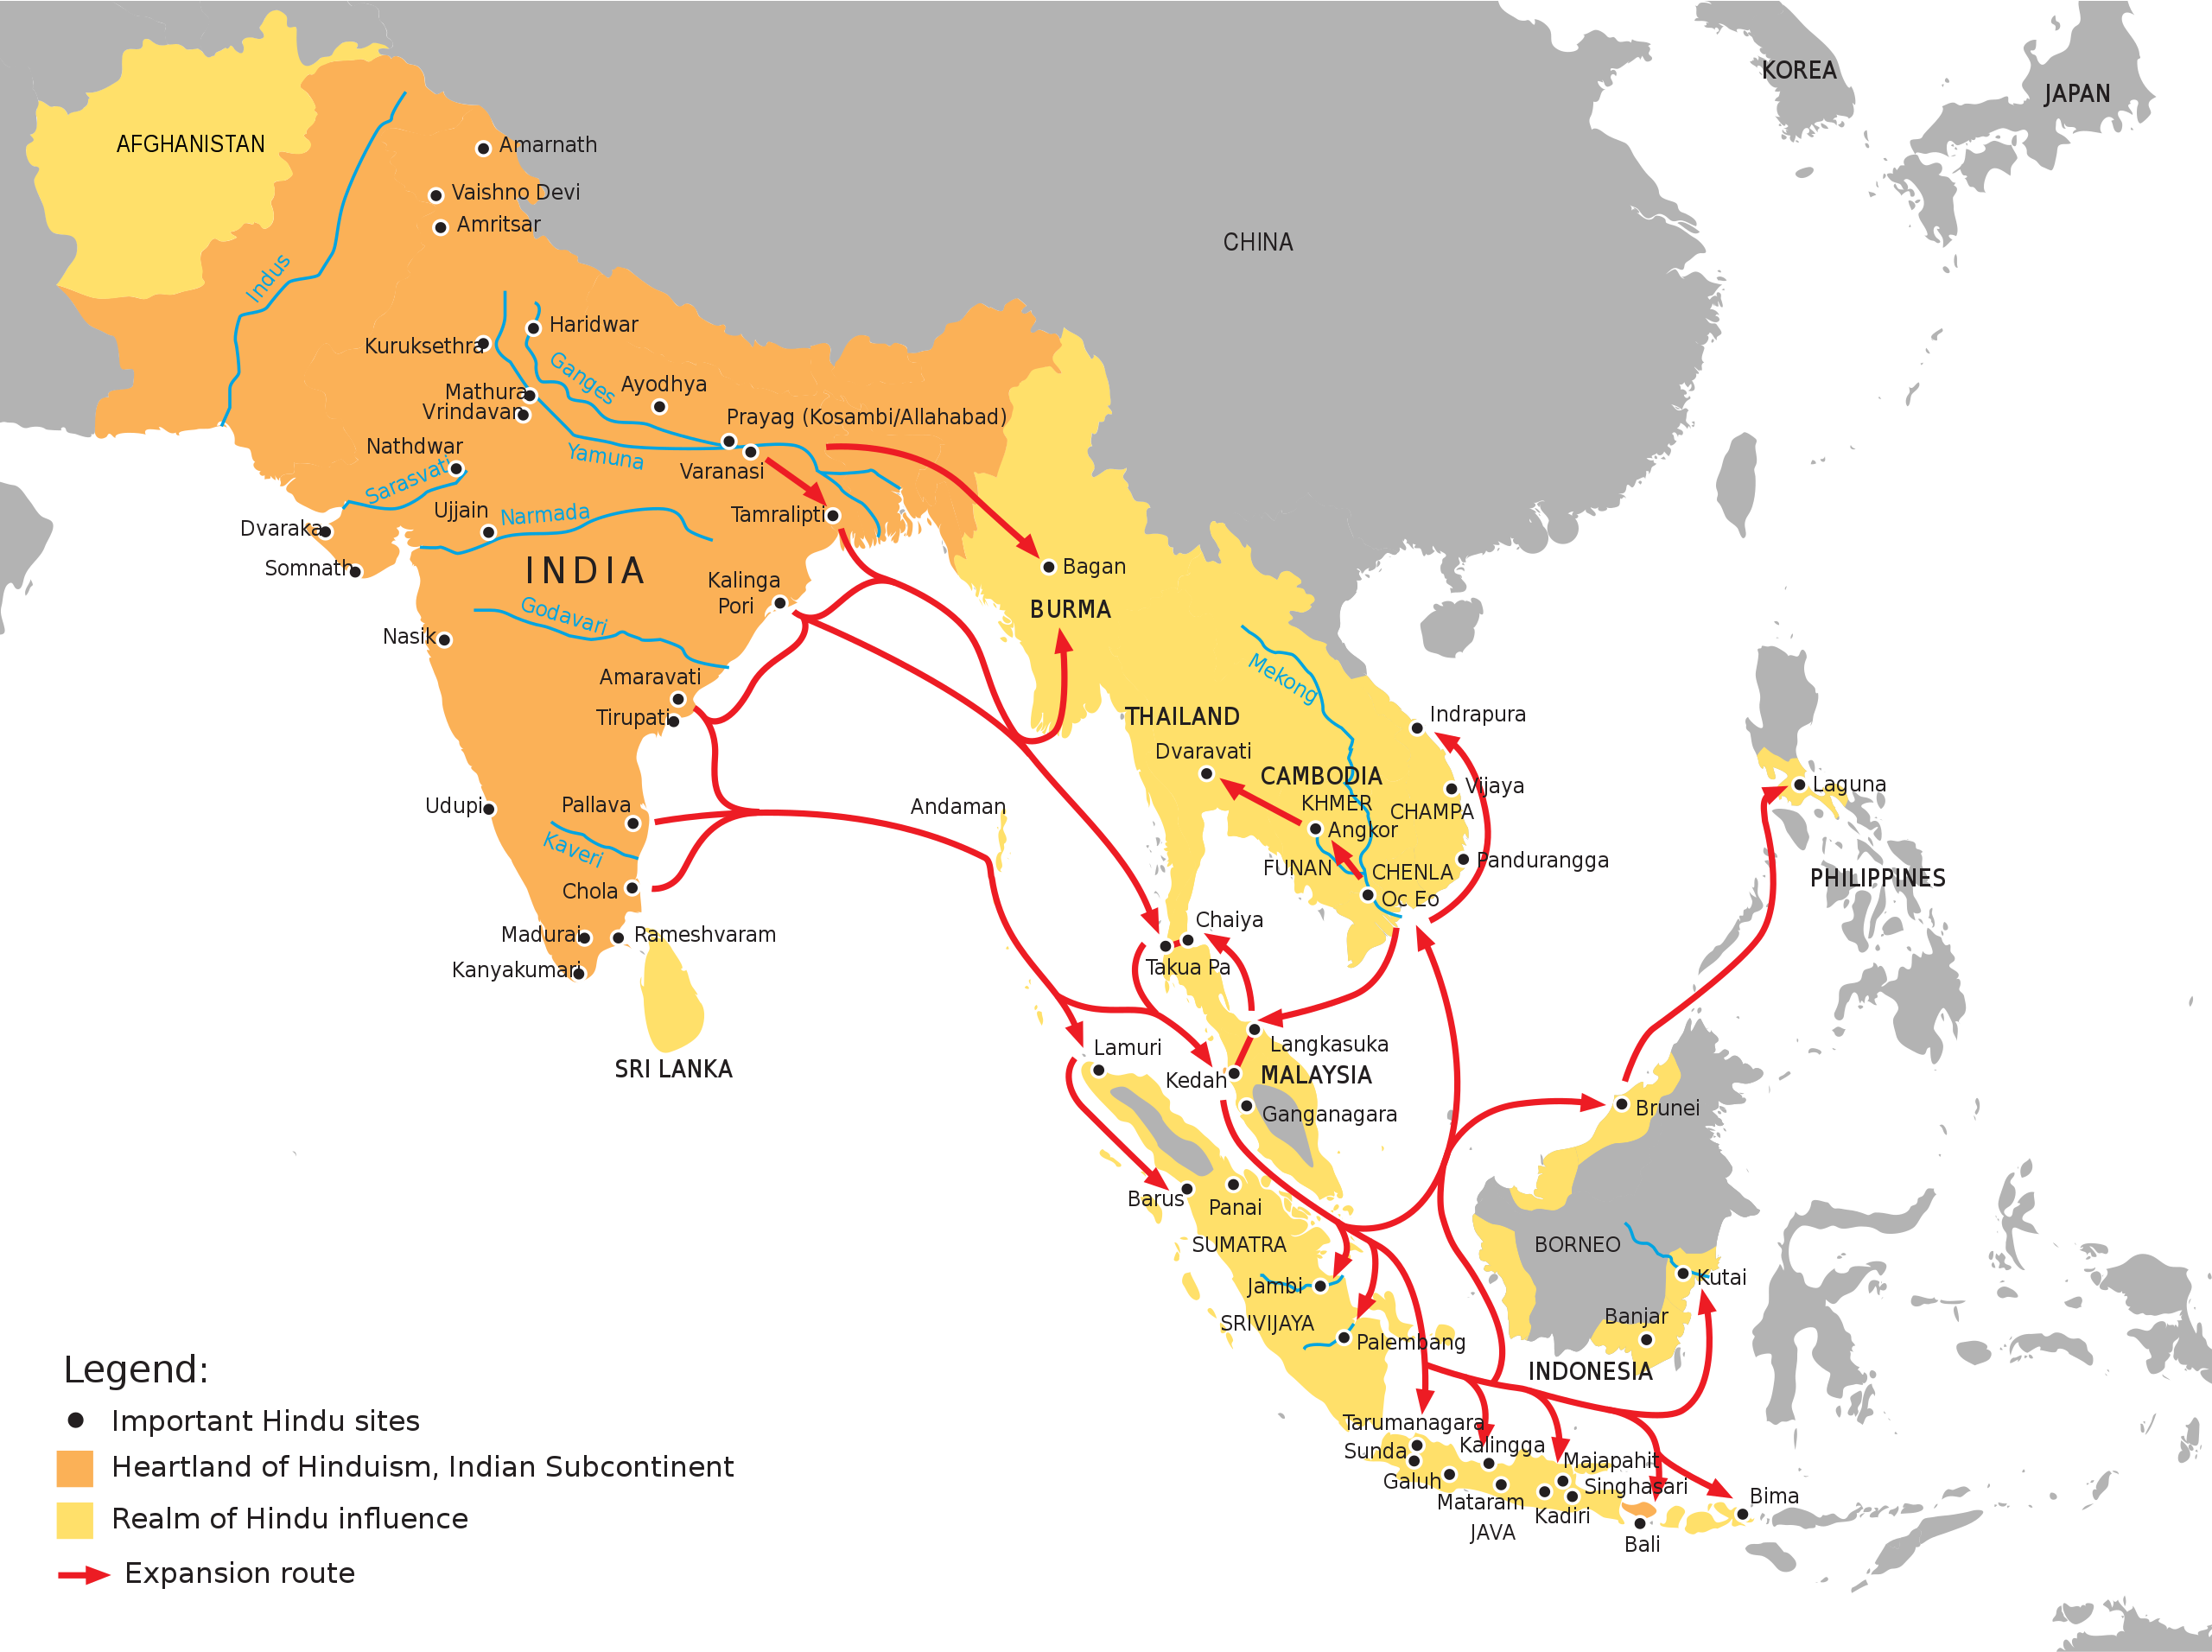 18世纪东南亚地图图片